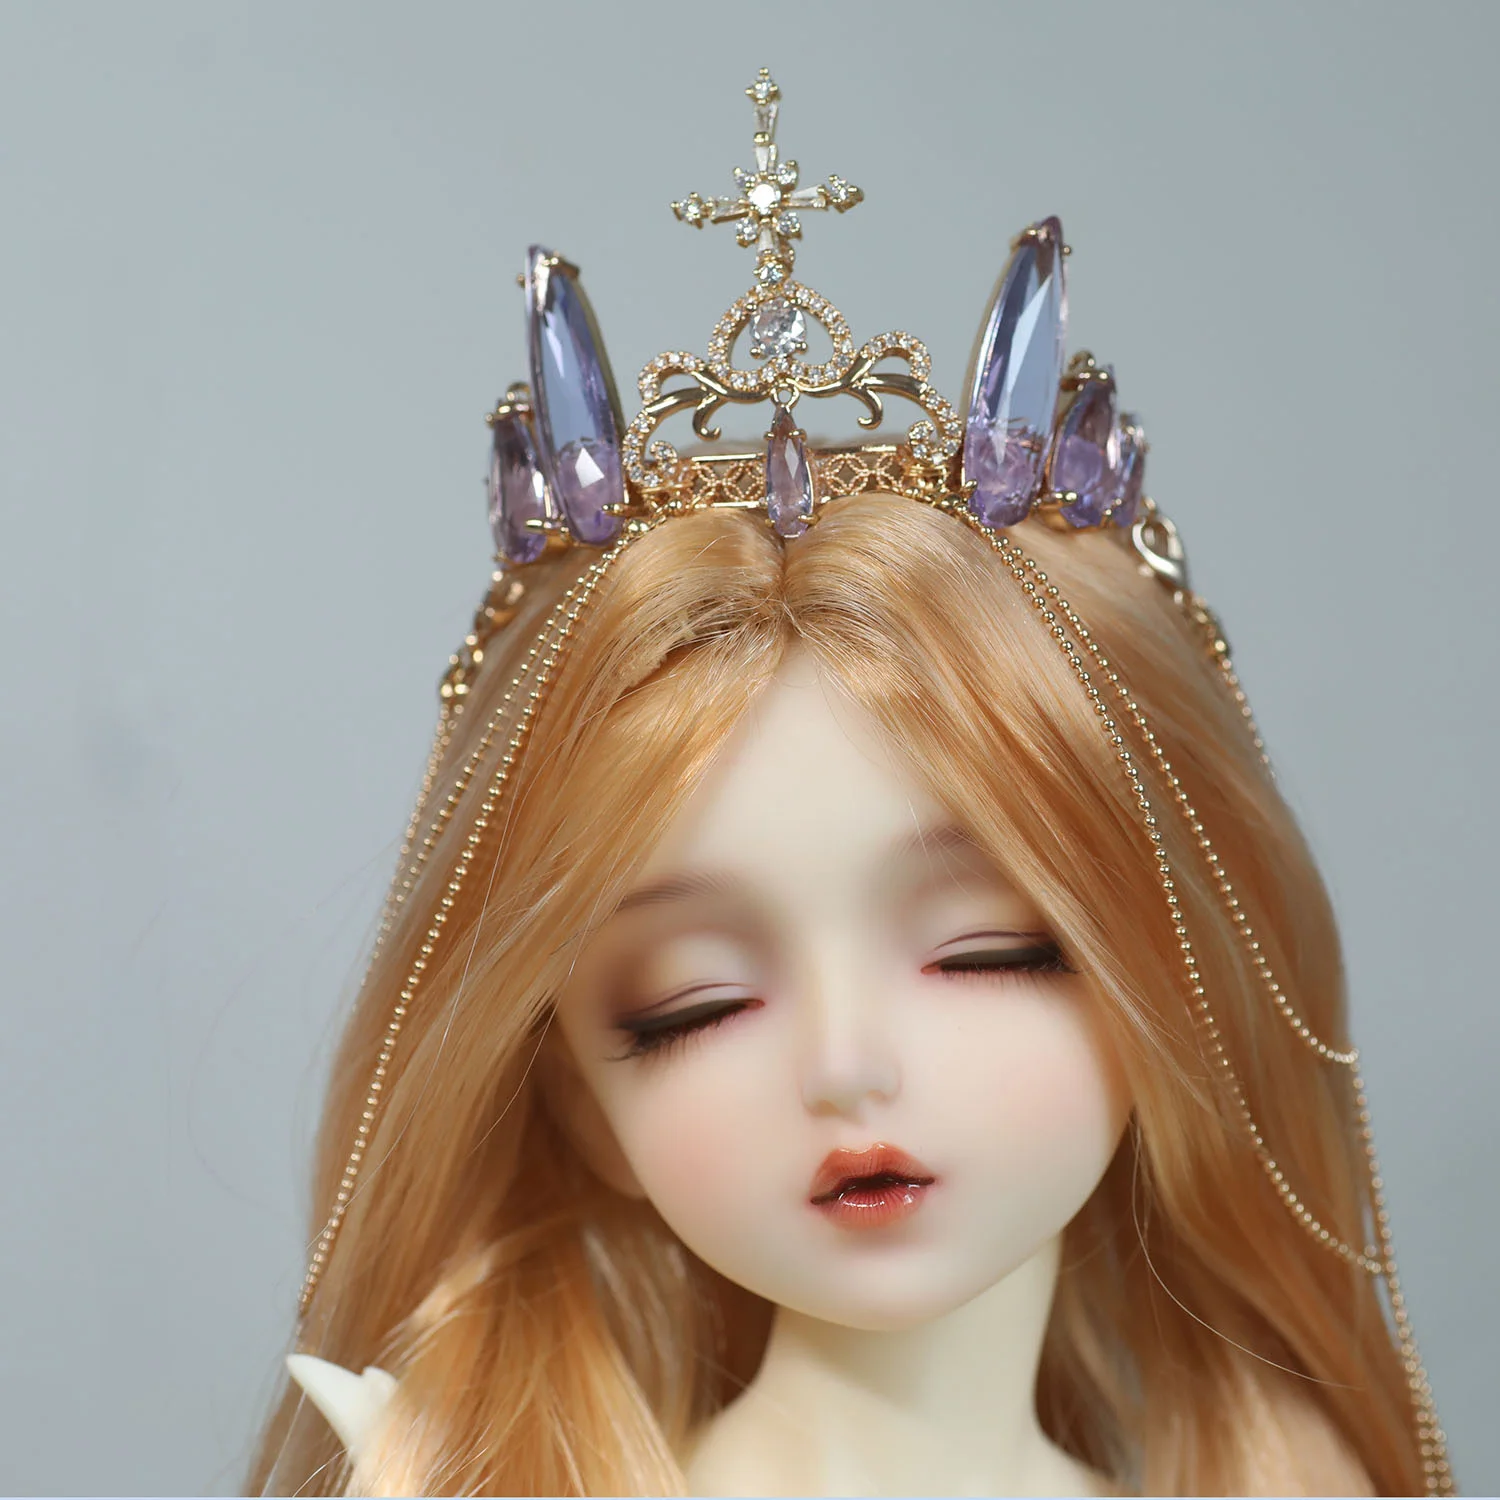 Аксесоари за кукли BJD за 1/3 от 1/4 от размера на чичо си, кукла bjd със седалище убором под формата на короната, превръзка от неопрен за коса, аксесоари за кукли във формата на корона (индивидуални)